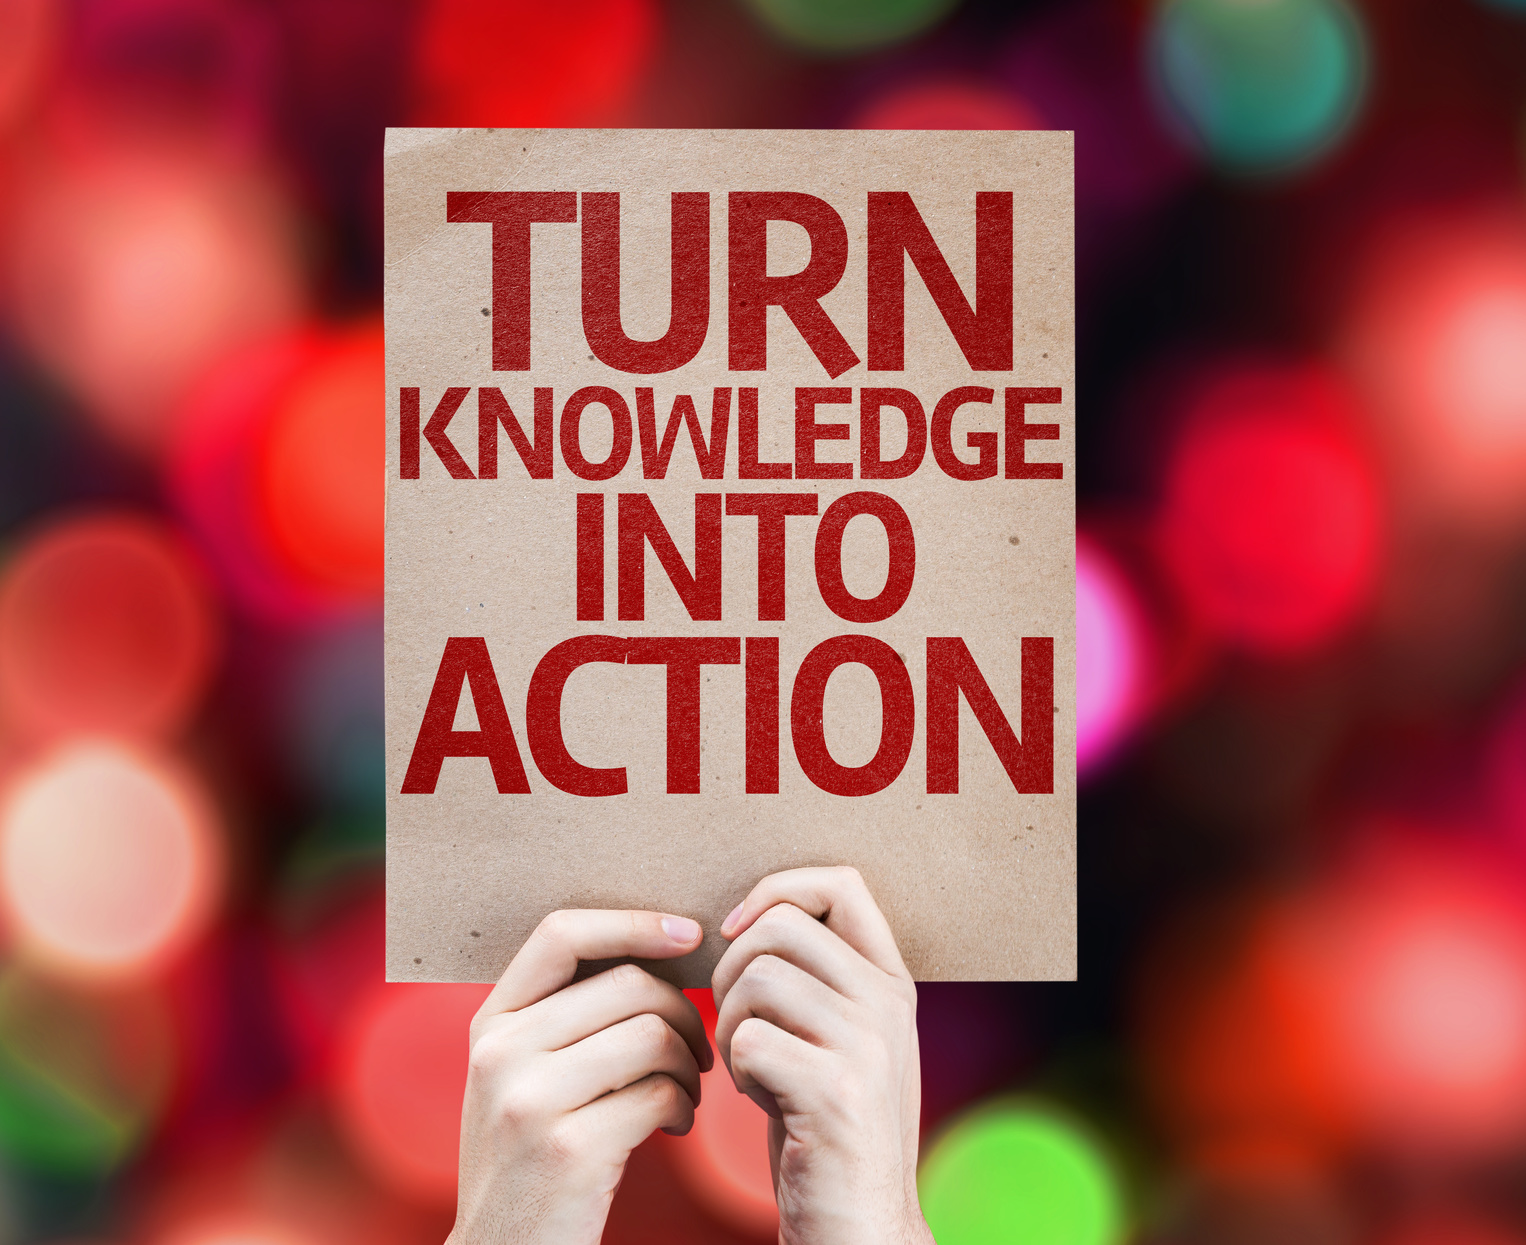 Zwei Hände halten einen Karton mit der Aufschrift "Turn Knowledge into Action".